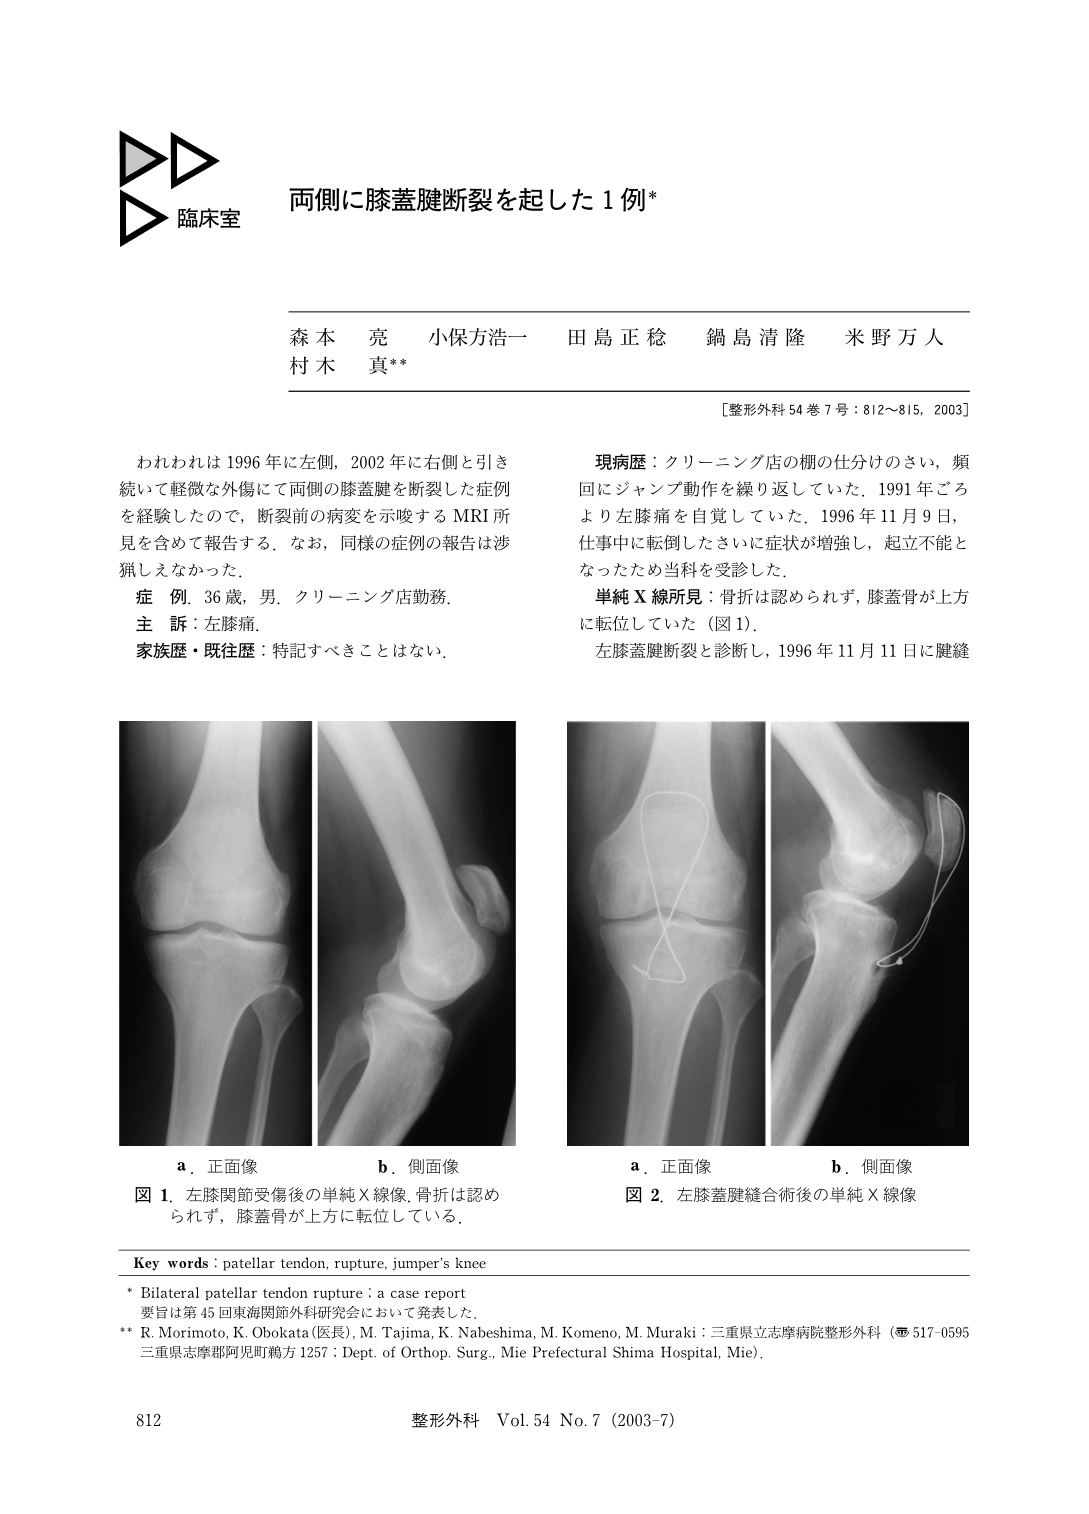 両側に膝蓋腱断裂を起した1例 臨床雑誌整形外科 54巻7号 医書 Jp